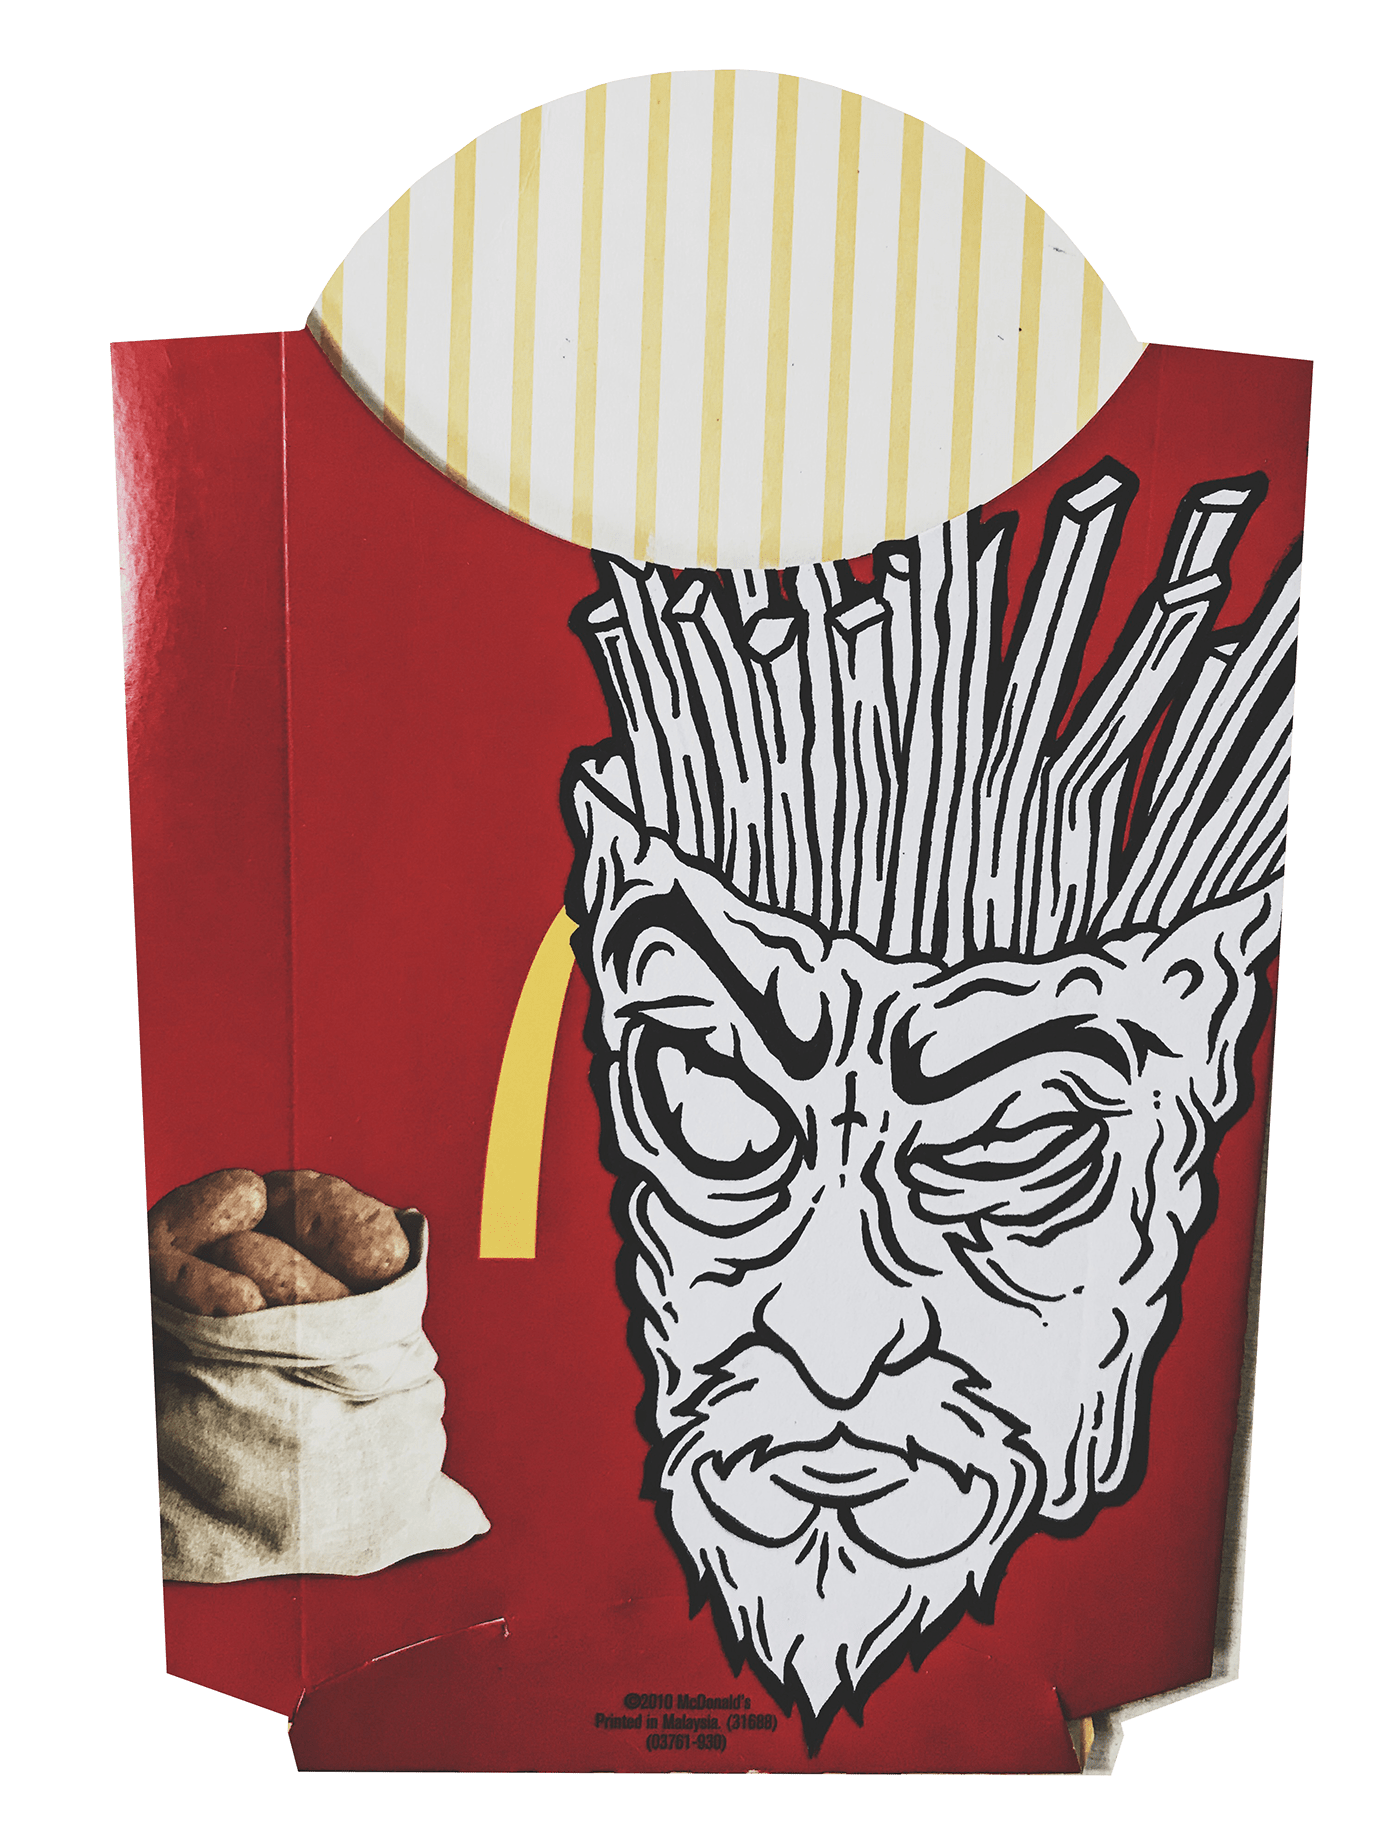 Adult Swim Aqua Teen Hunger Force cartoon Fast food McDonalds